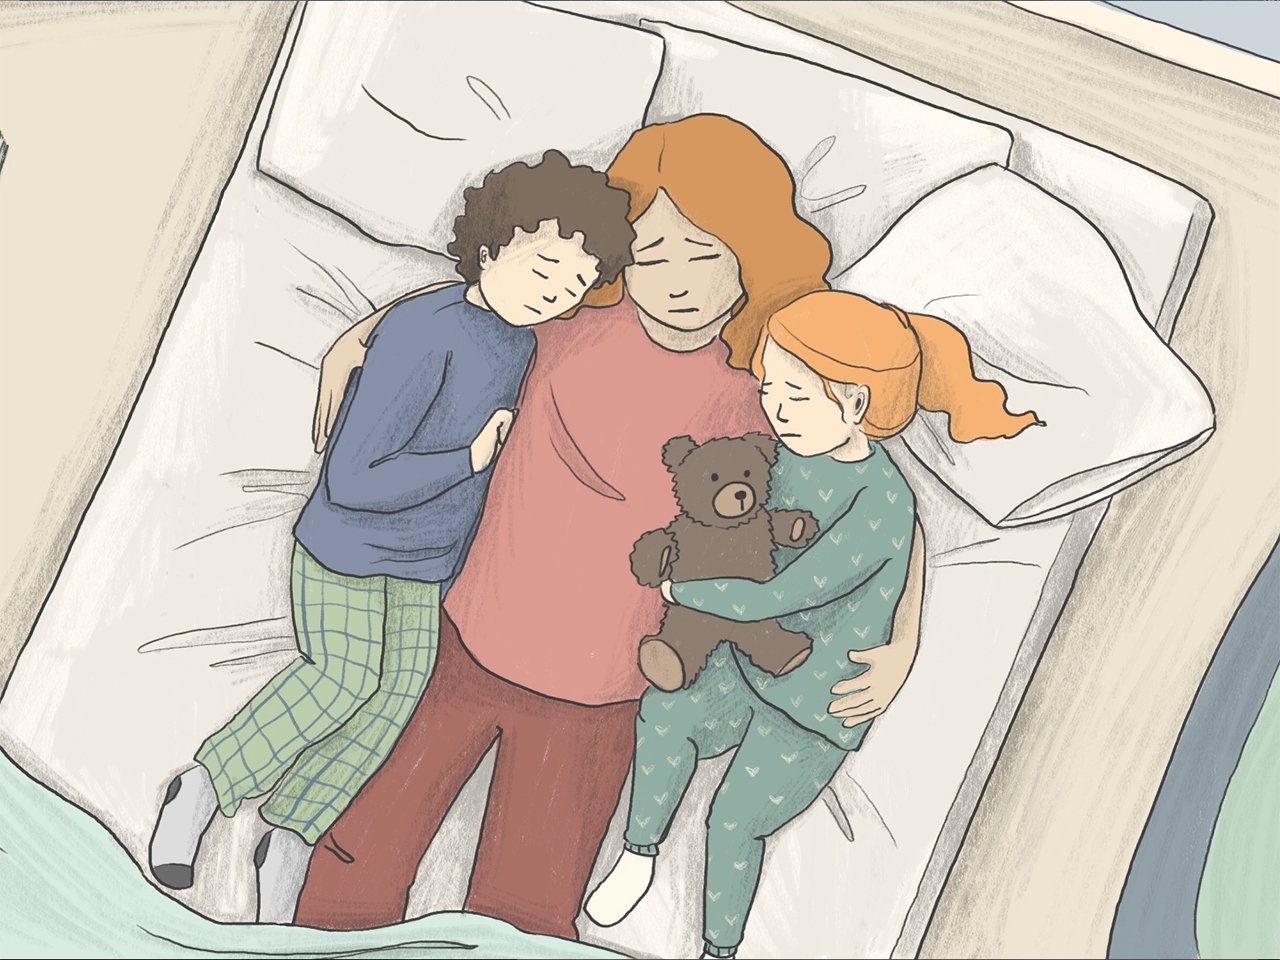 Illustration of a sad mother holding her kids